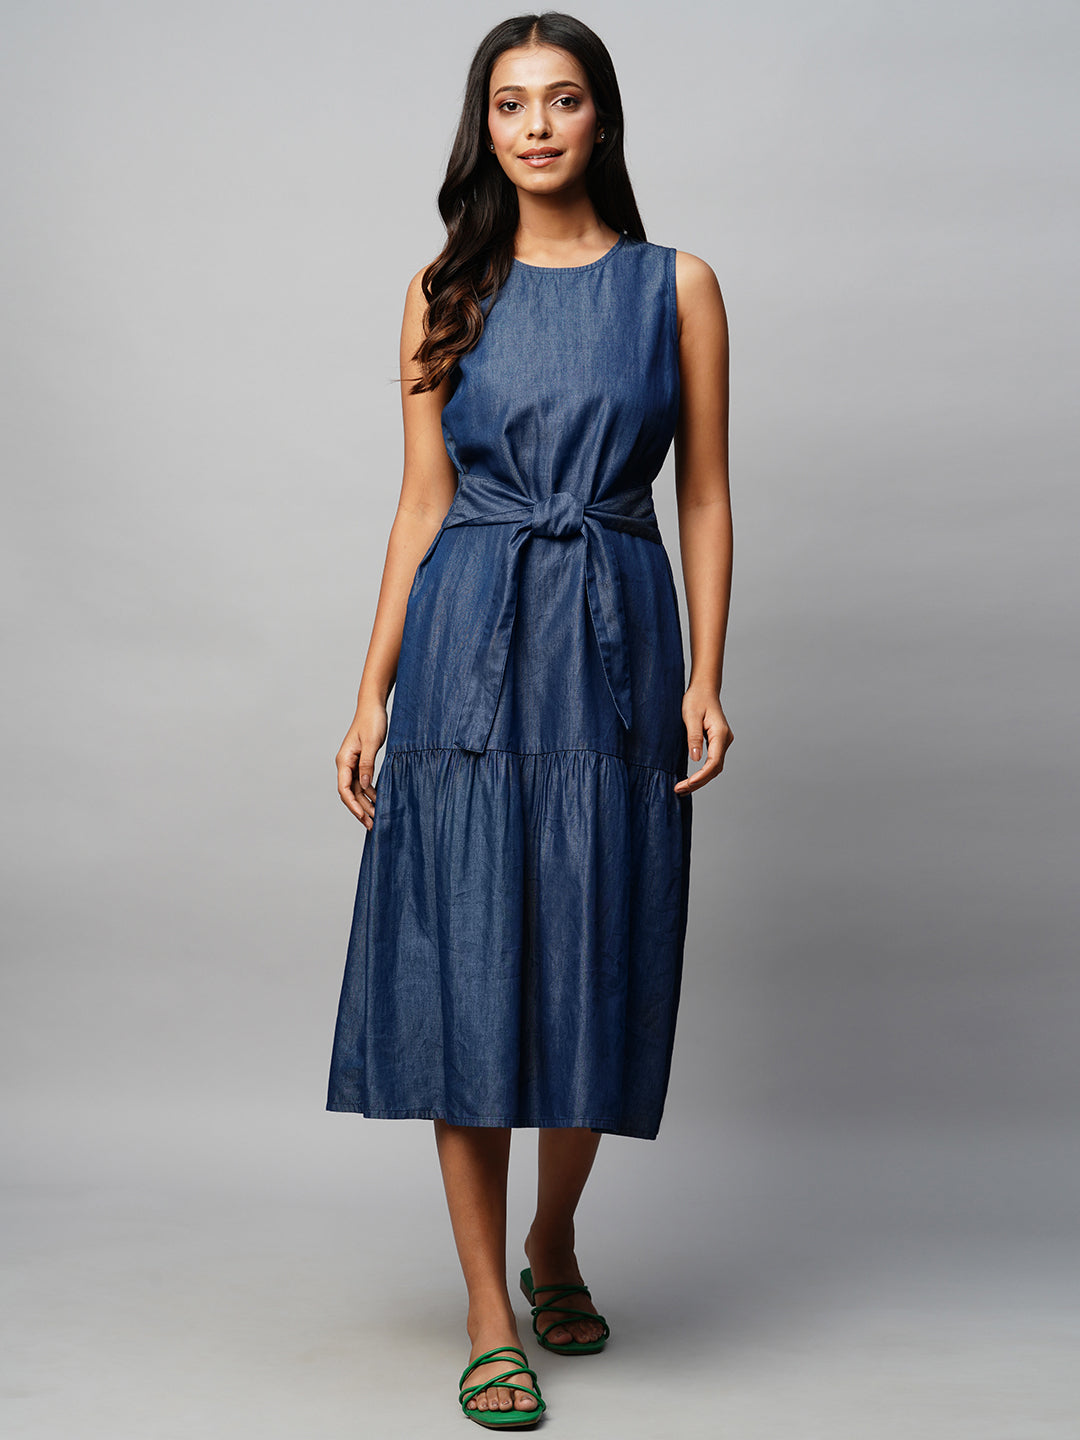 Blackpink Lisa Inspired Casual Blue Denim Mini Dress – unnielooks